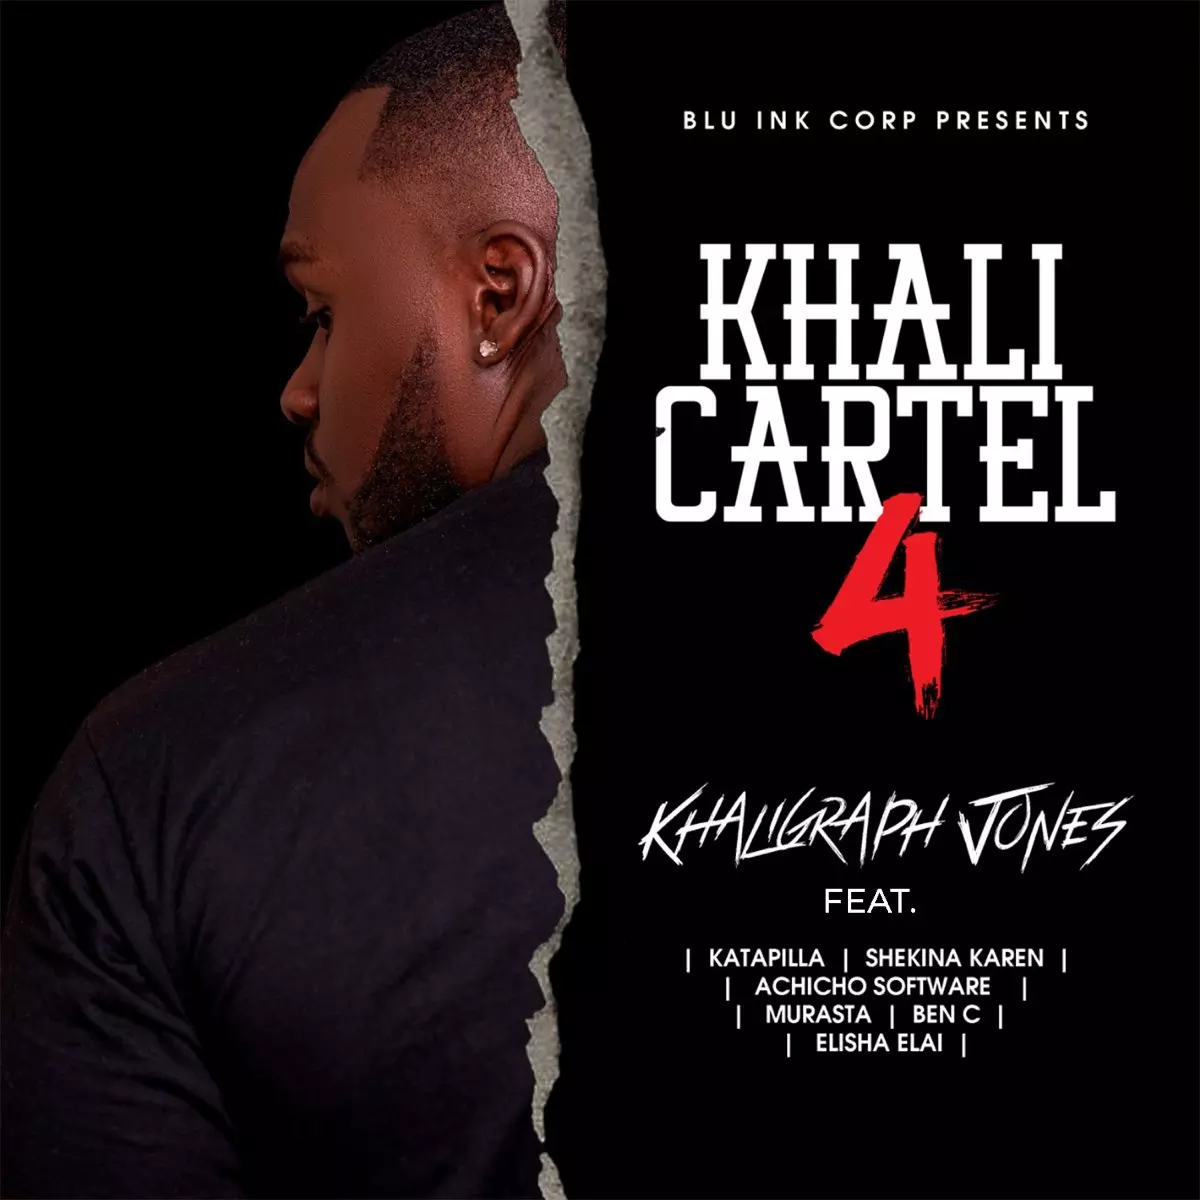 KHALI CARTEL 4 (feat. Katapilla, Shekina Karen, Achicho Software, Murasta, Ben C & Elisha Elai) - Single by Khaligraph Jones on Apple Music